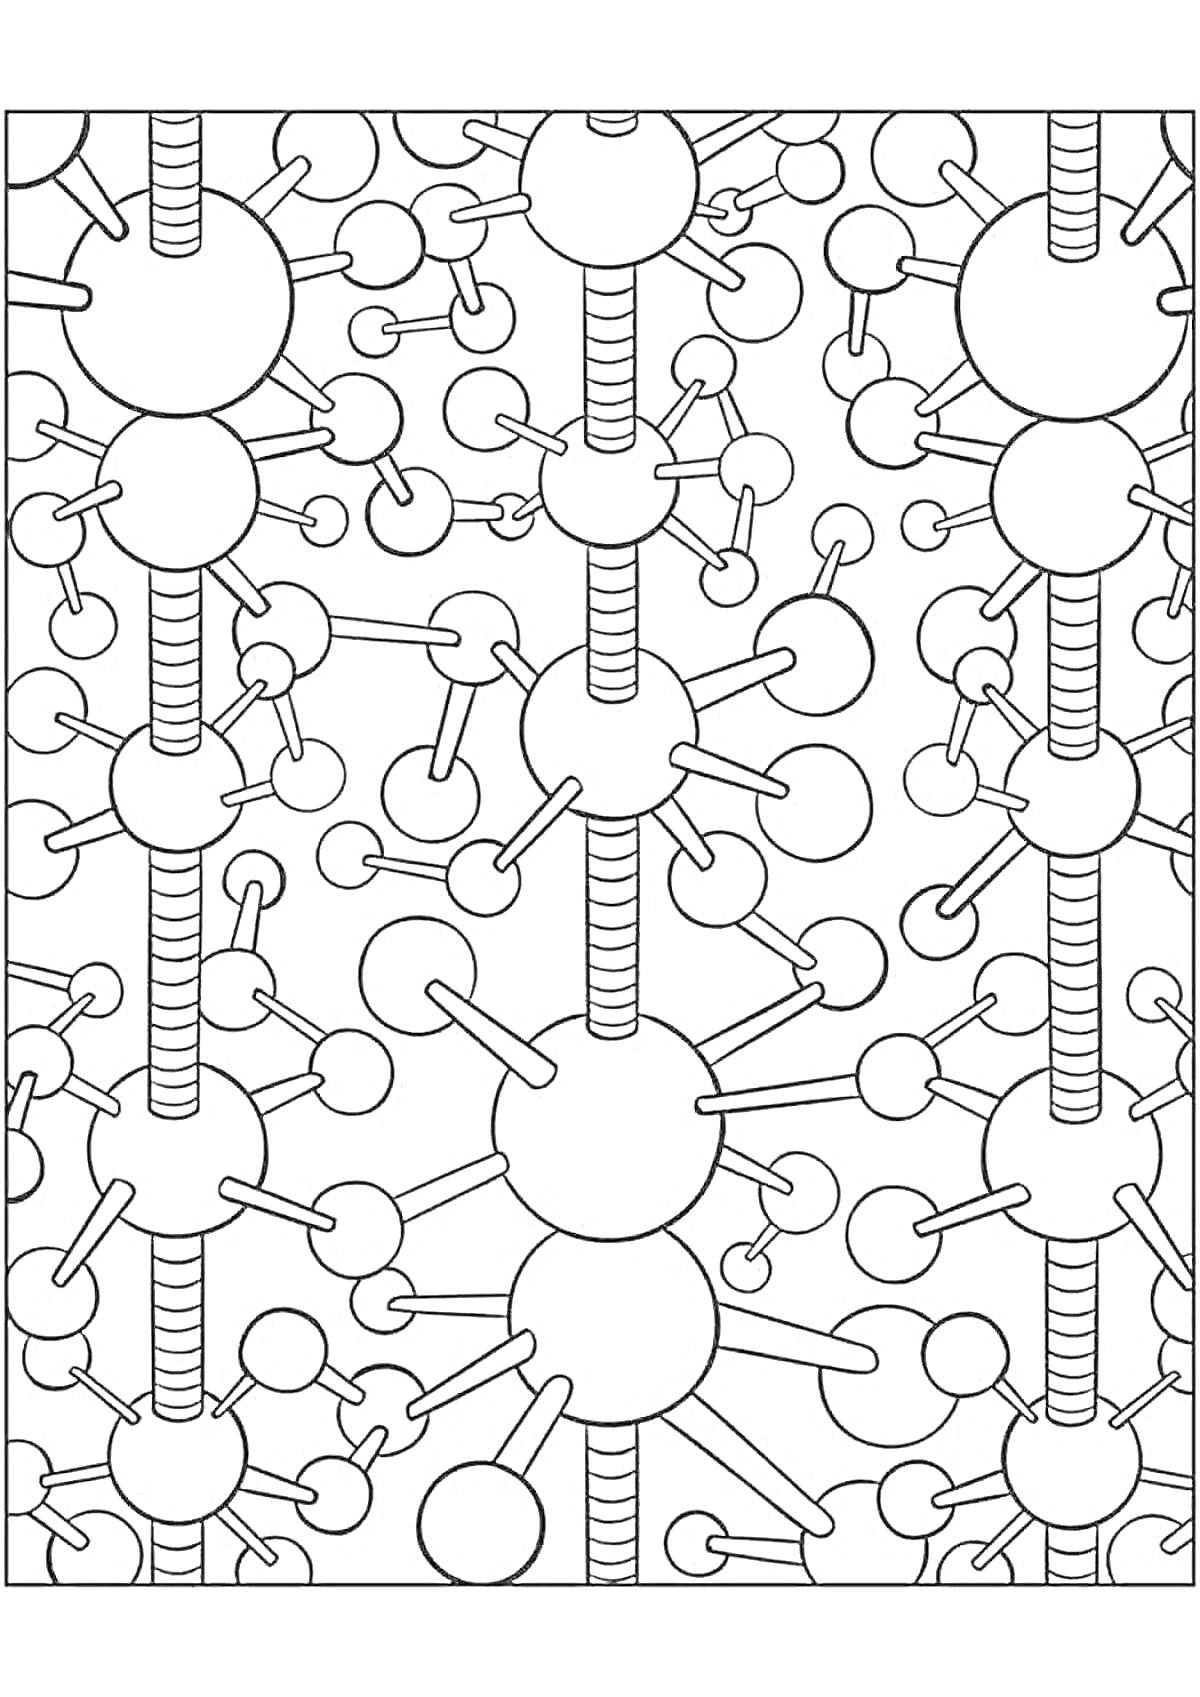 Раскраска Молекулы и соединения с атомами на фоне, антистресс раскраска